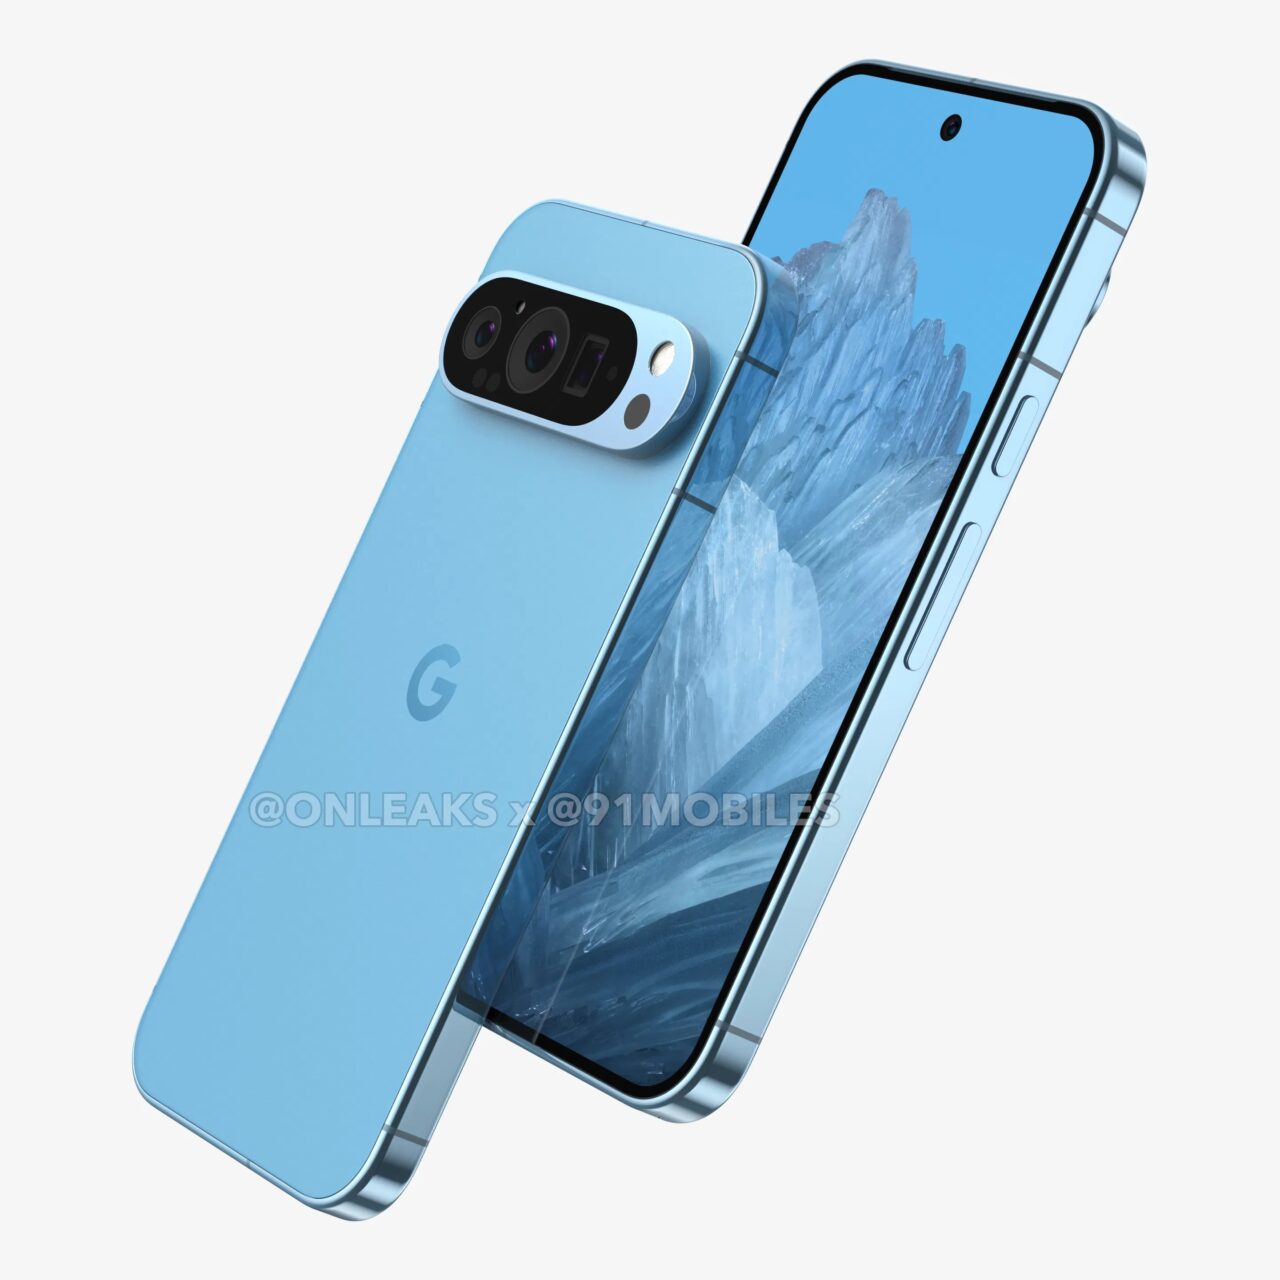 Inteligentny telefon w kolorze niebieskim z potrójnym aparatem z tyłu i ekranem z widoczną górską tapetą.